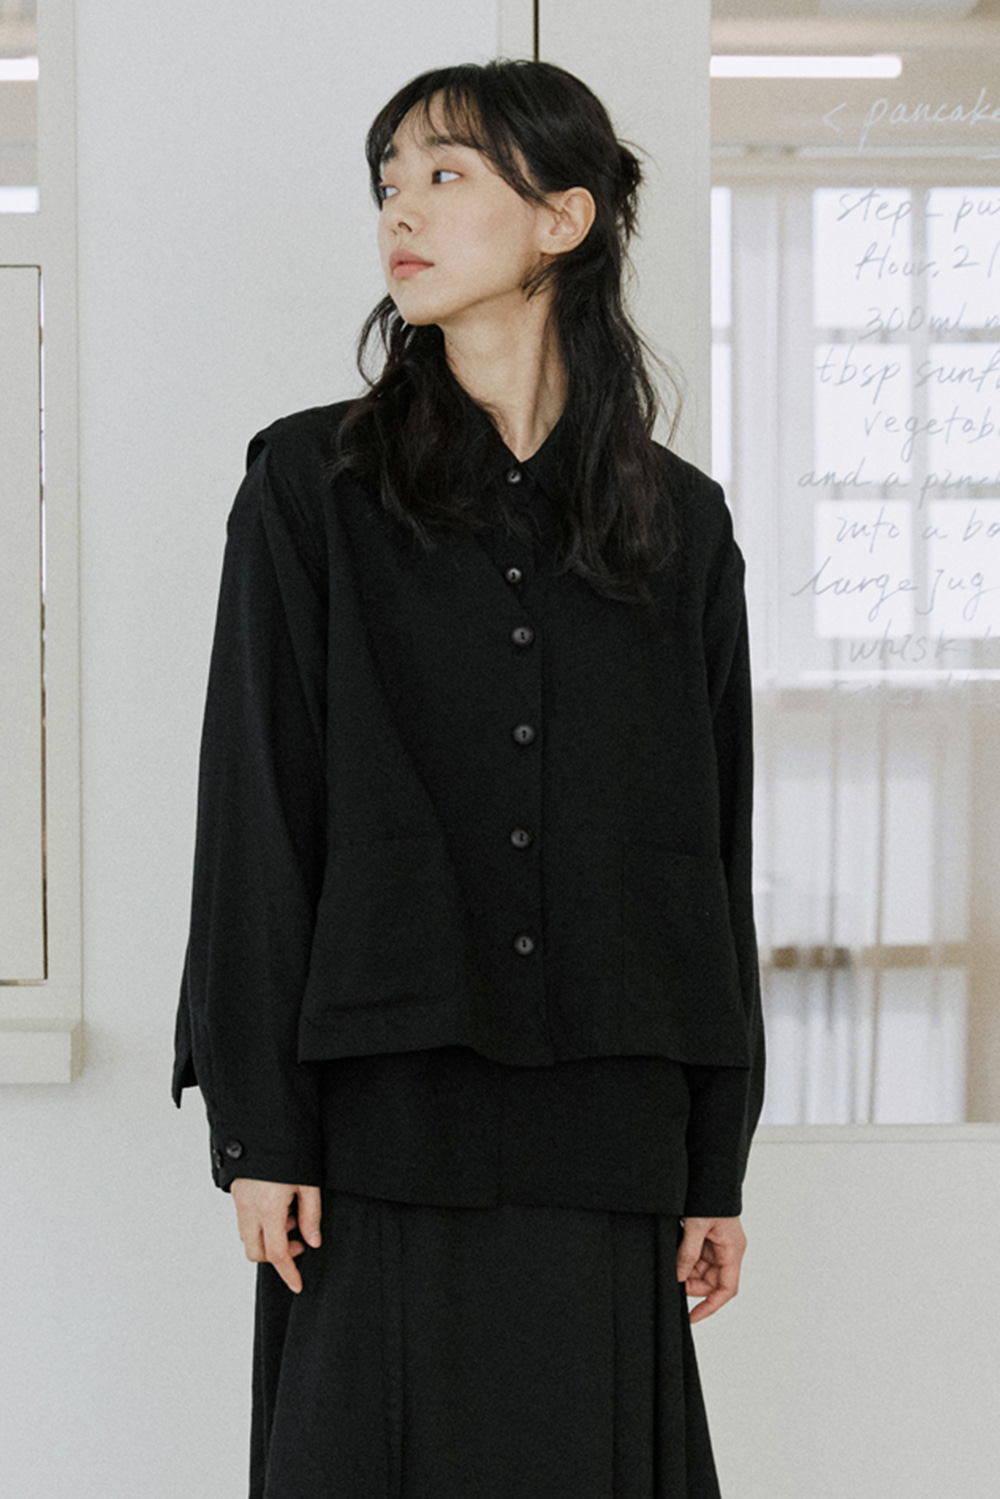 linen vest shirts black [2color]